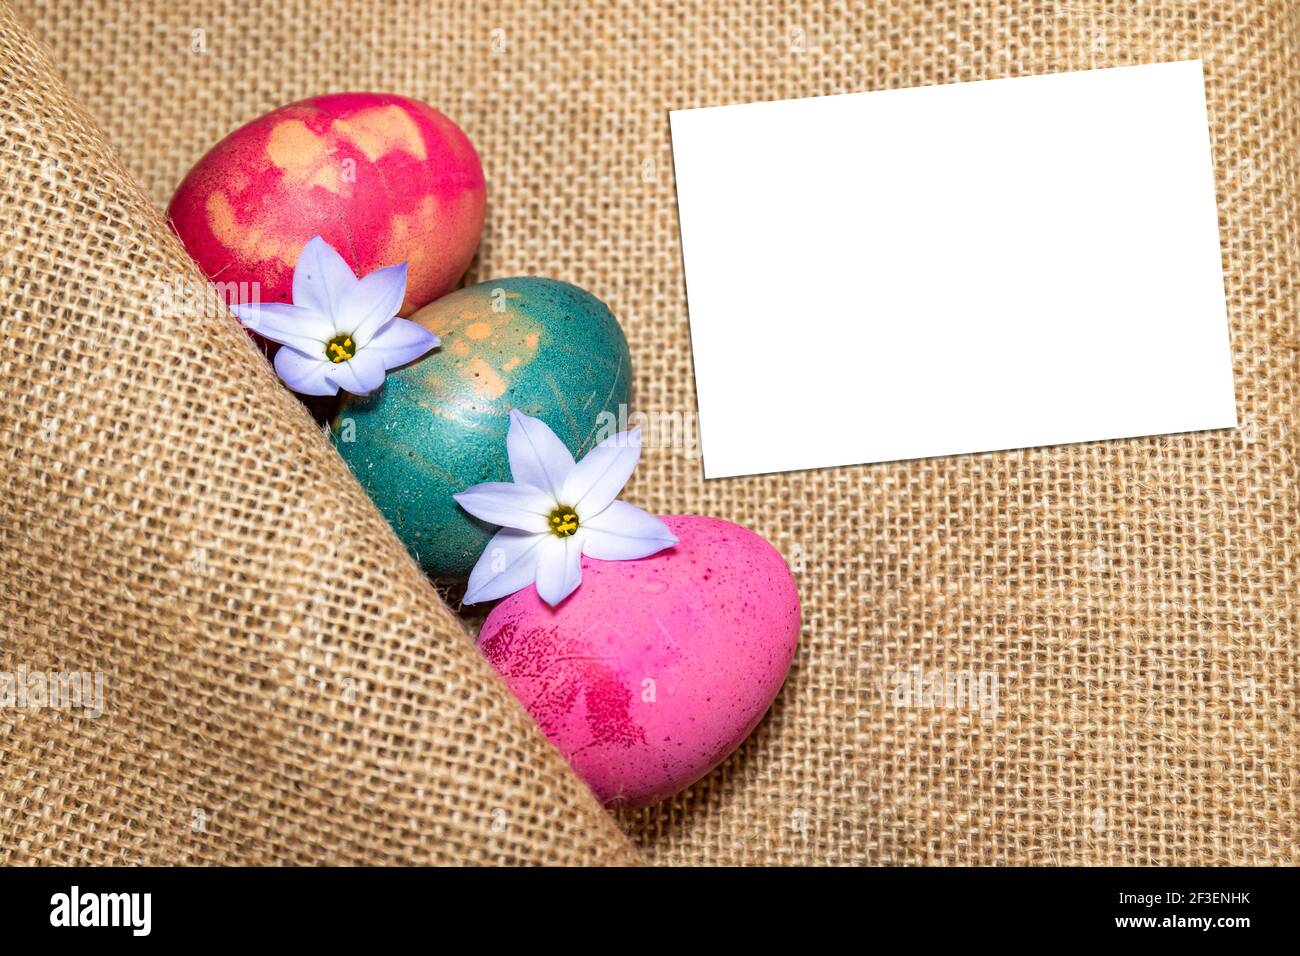 Farbige Ostereier, in Jutetuch gehüllt und mit zarten Frühlings-Sternenblumen verziert. Grußkarte für ein frohes Osterfest! Stockfoto